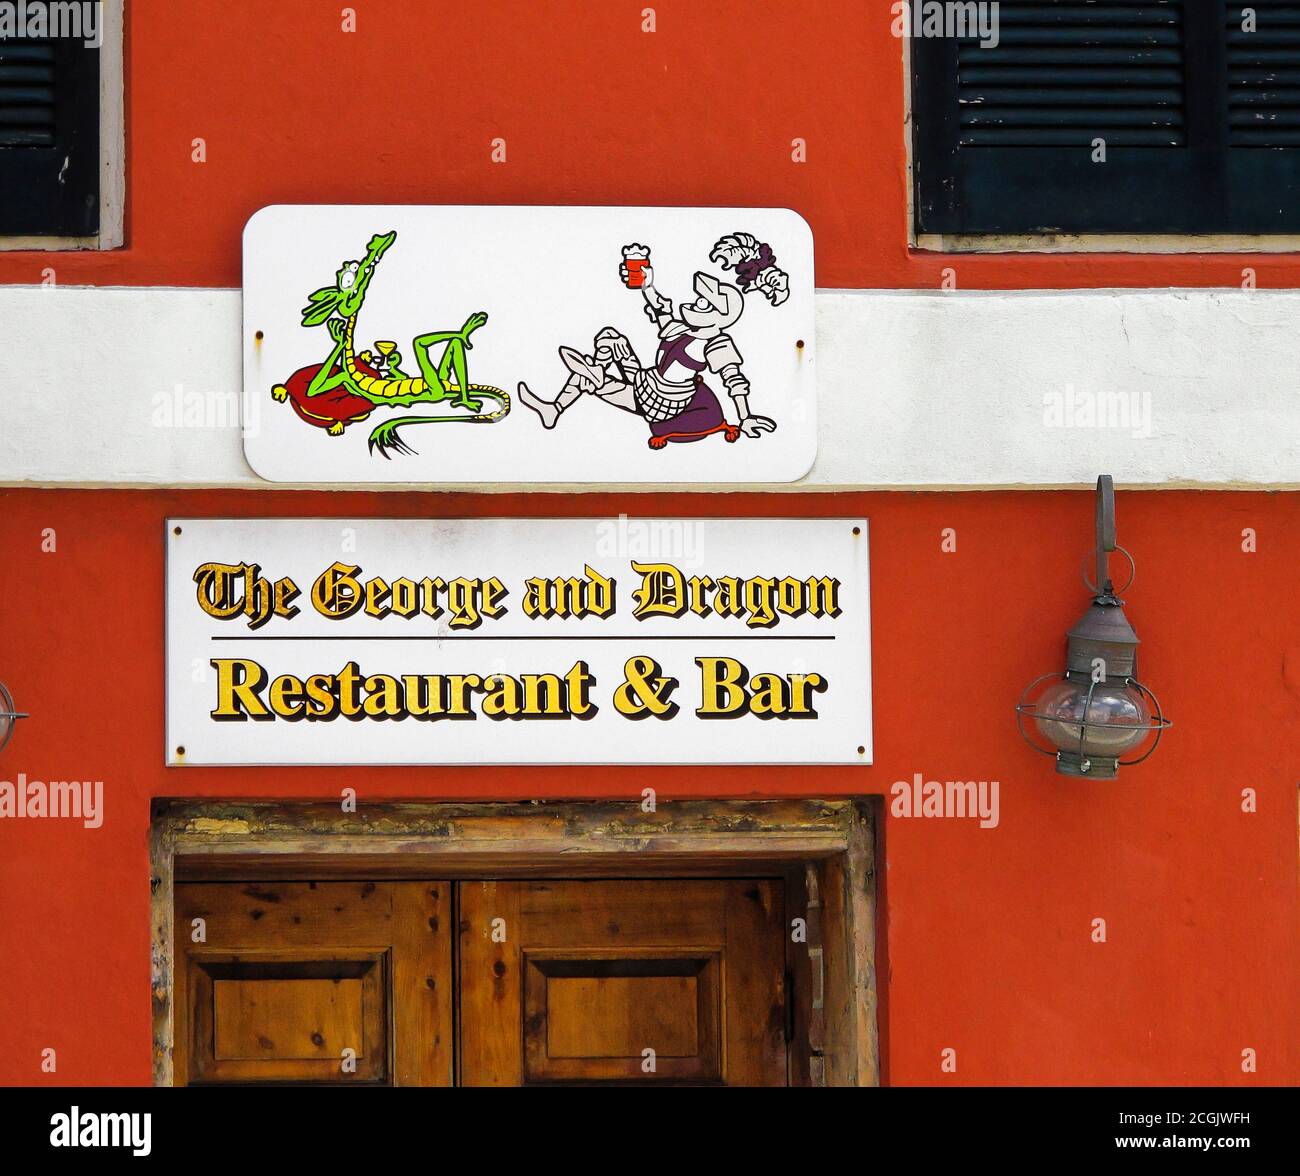 El restaurante y bar George and Dragon, señal sobre la puerta, caballero y dragón dibujos animados, edificio rojo, negocios; St. George; Bermuda Foto de stock